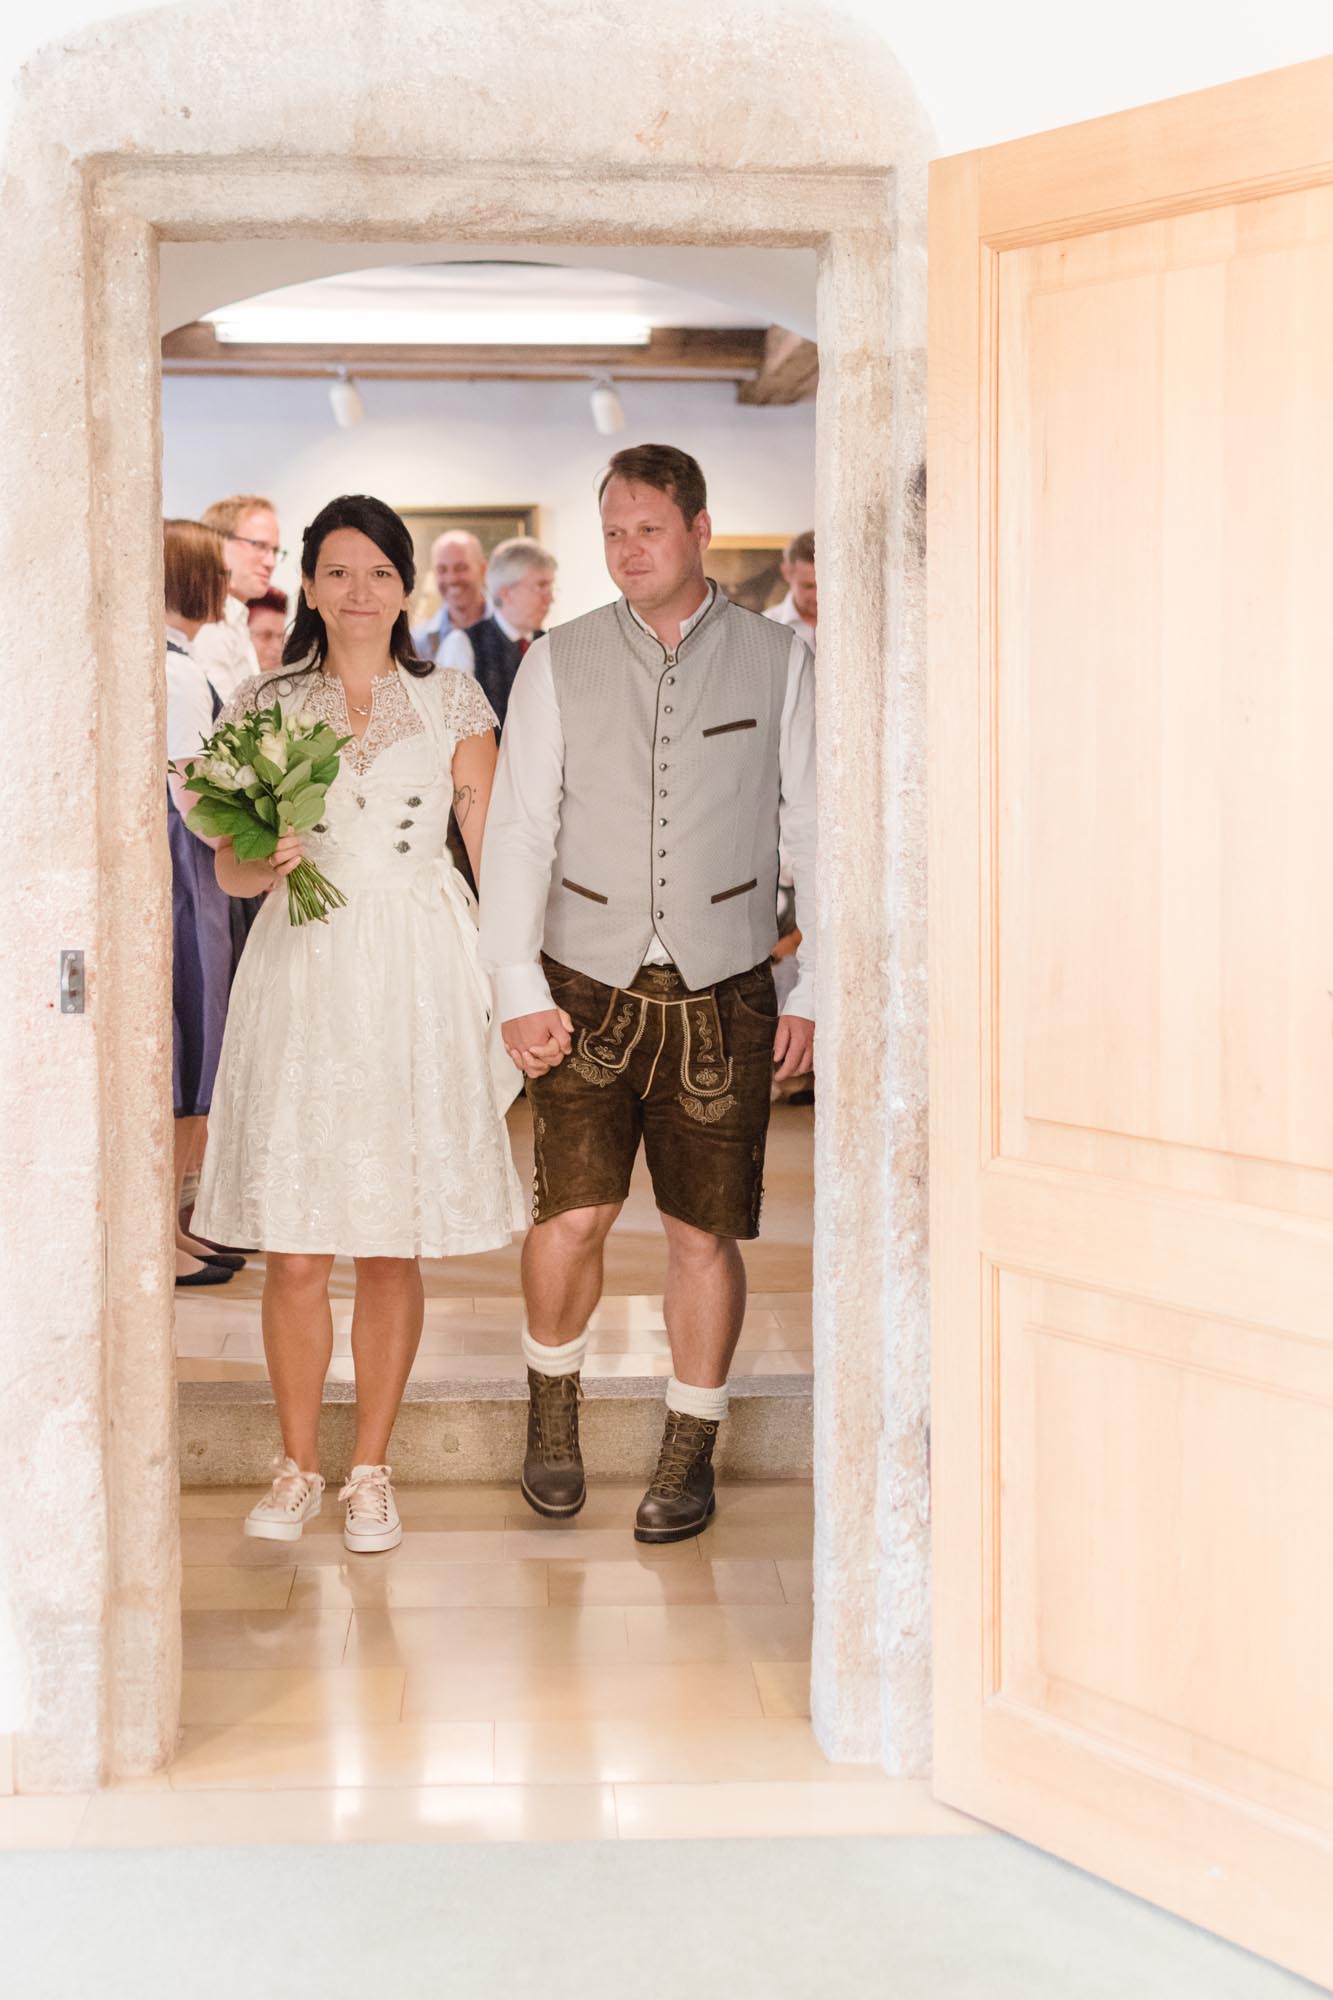 Hochzeitsfotos_Hochzeitsreportage in Wien_Standesamt_Brautpaar zieht aus dem Trauungssaal aus